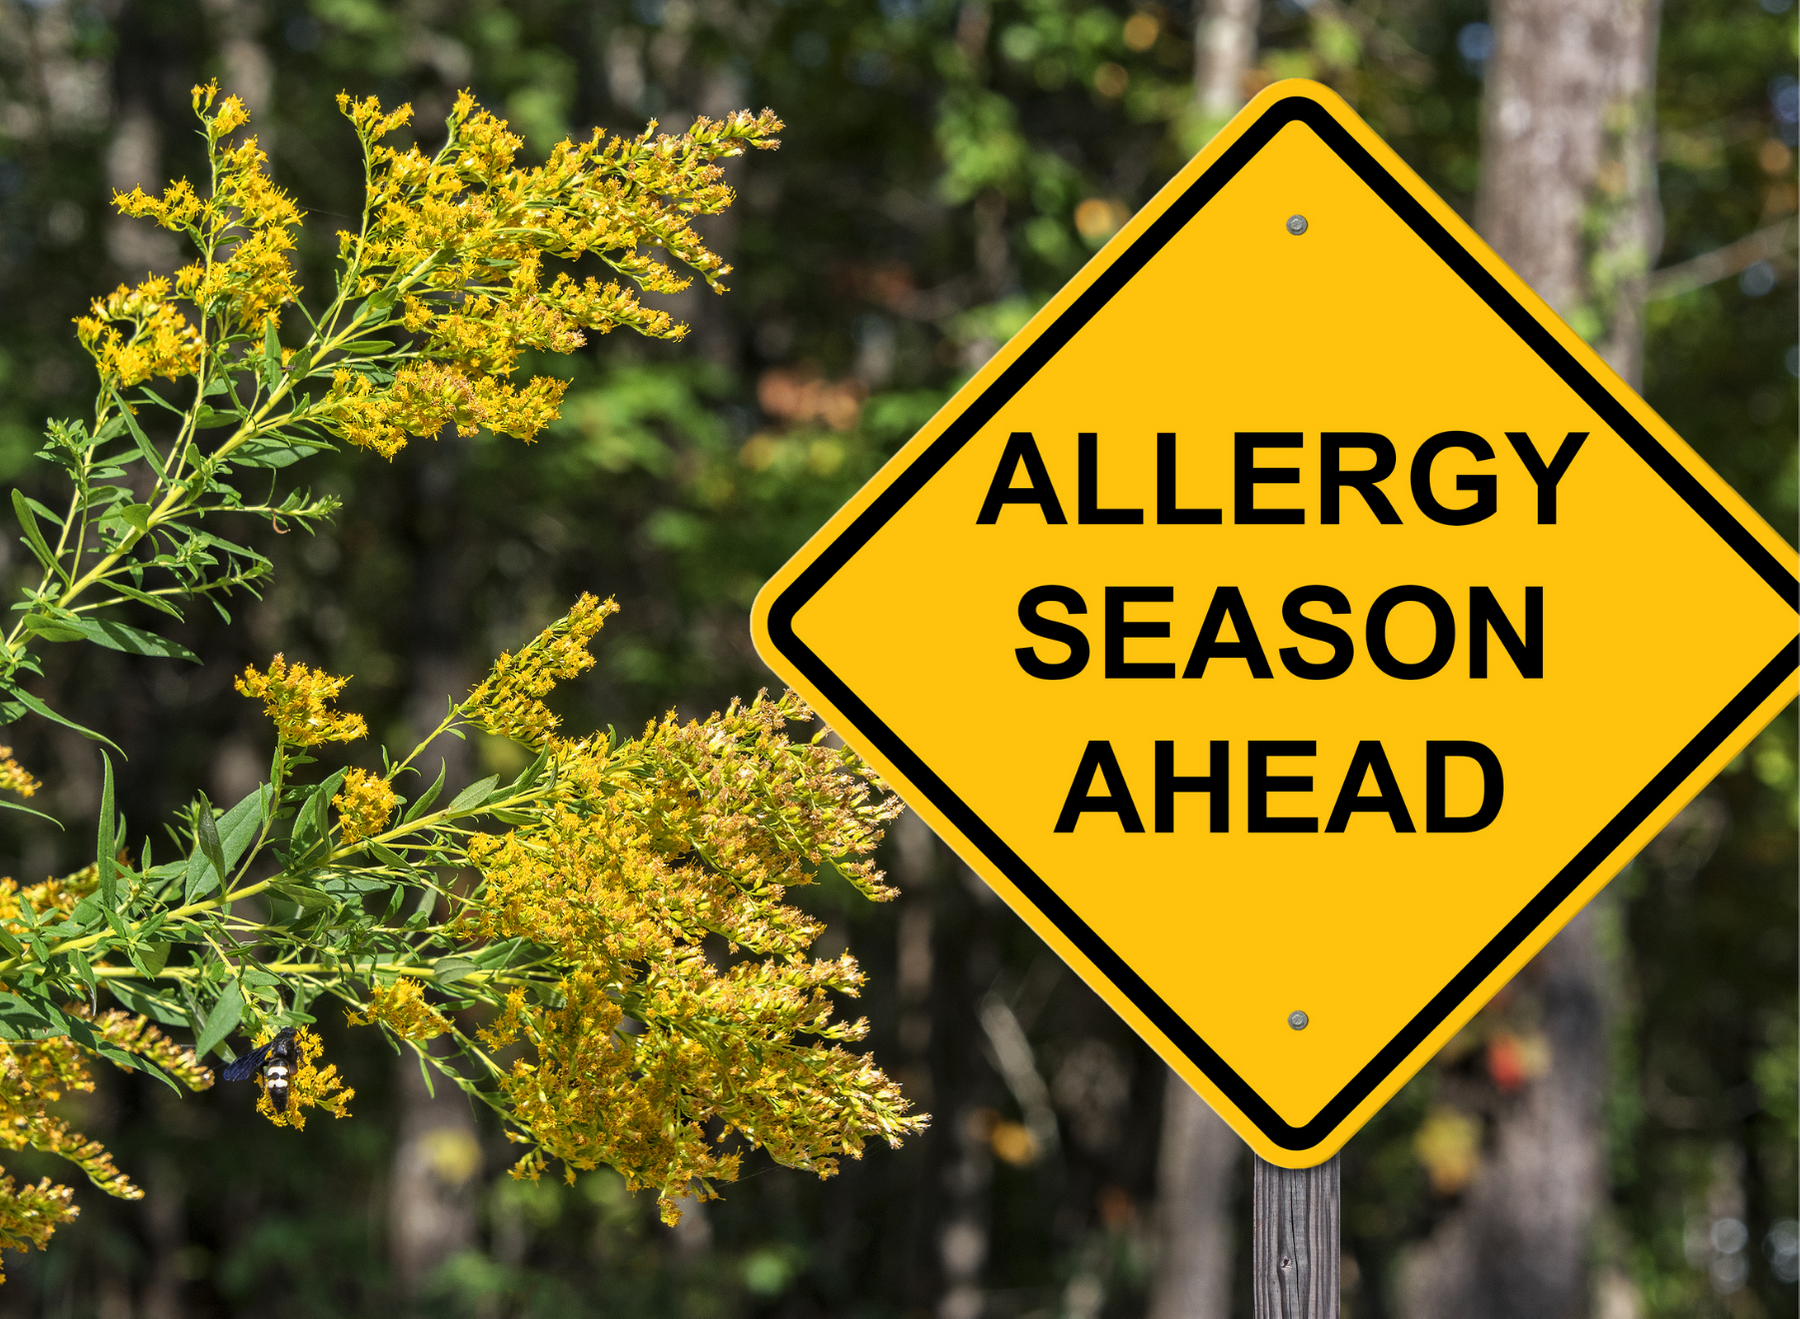 スギ花粉特異的 IgE 抗体価は、花粉アレルギーのスクリーニングに役立つ可能性があります